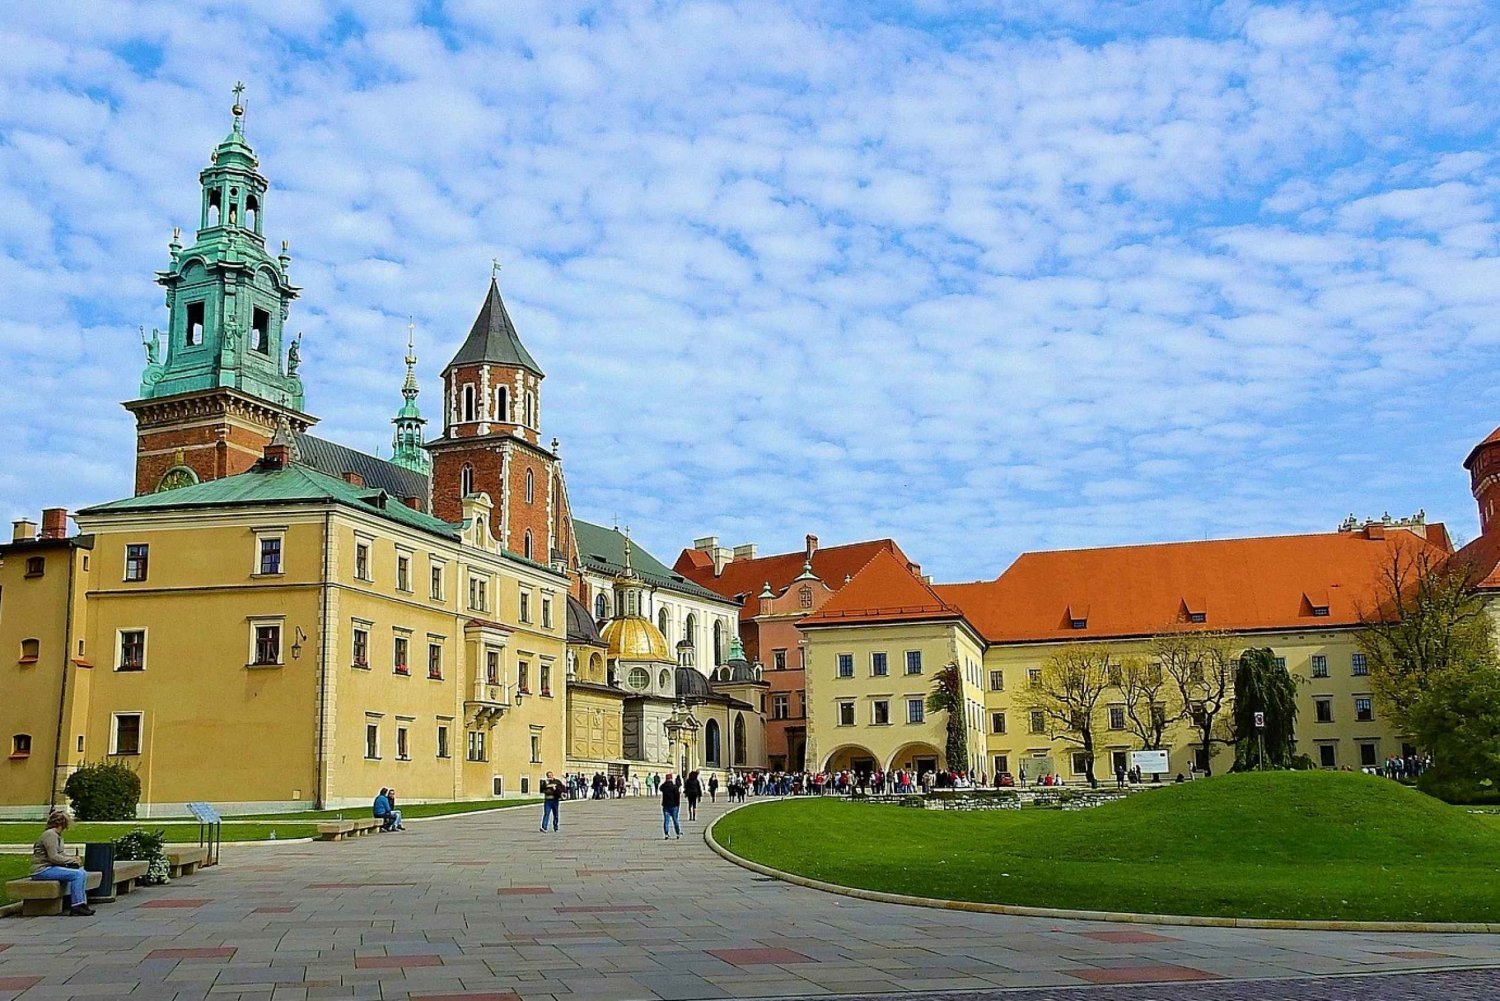 Krakóws gamla stad och judiska kvarteren